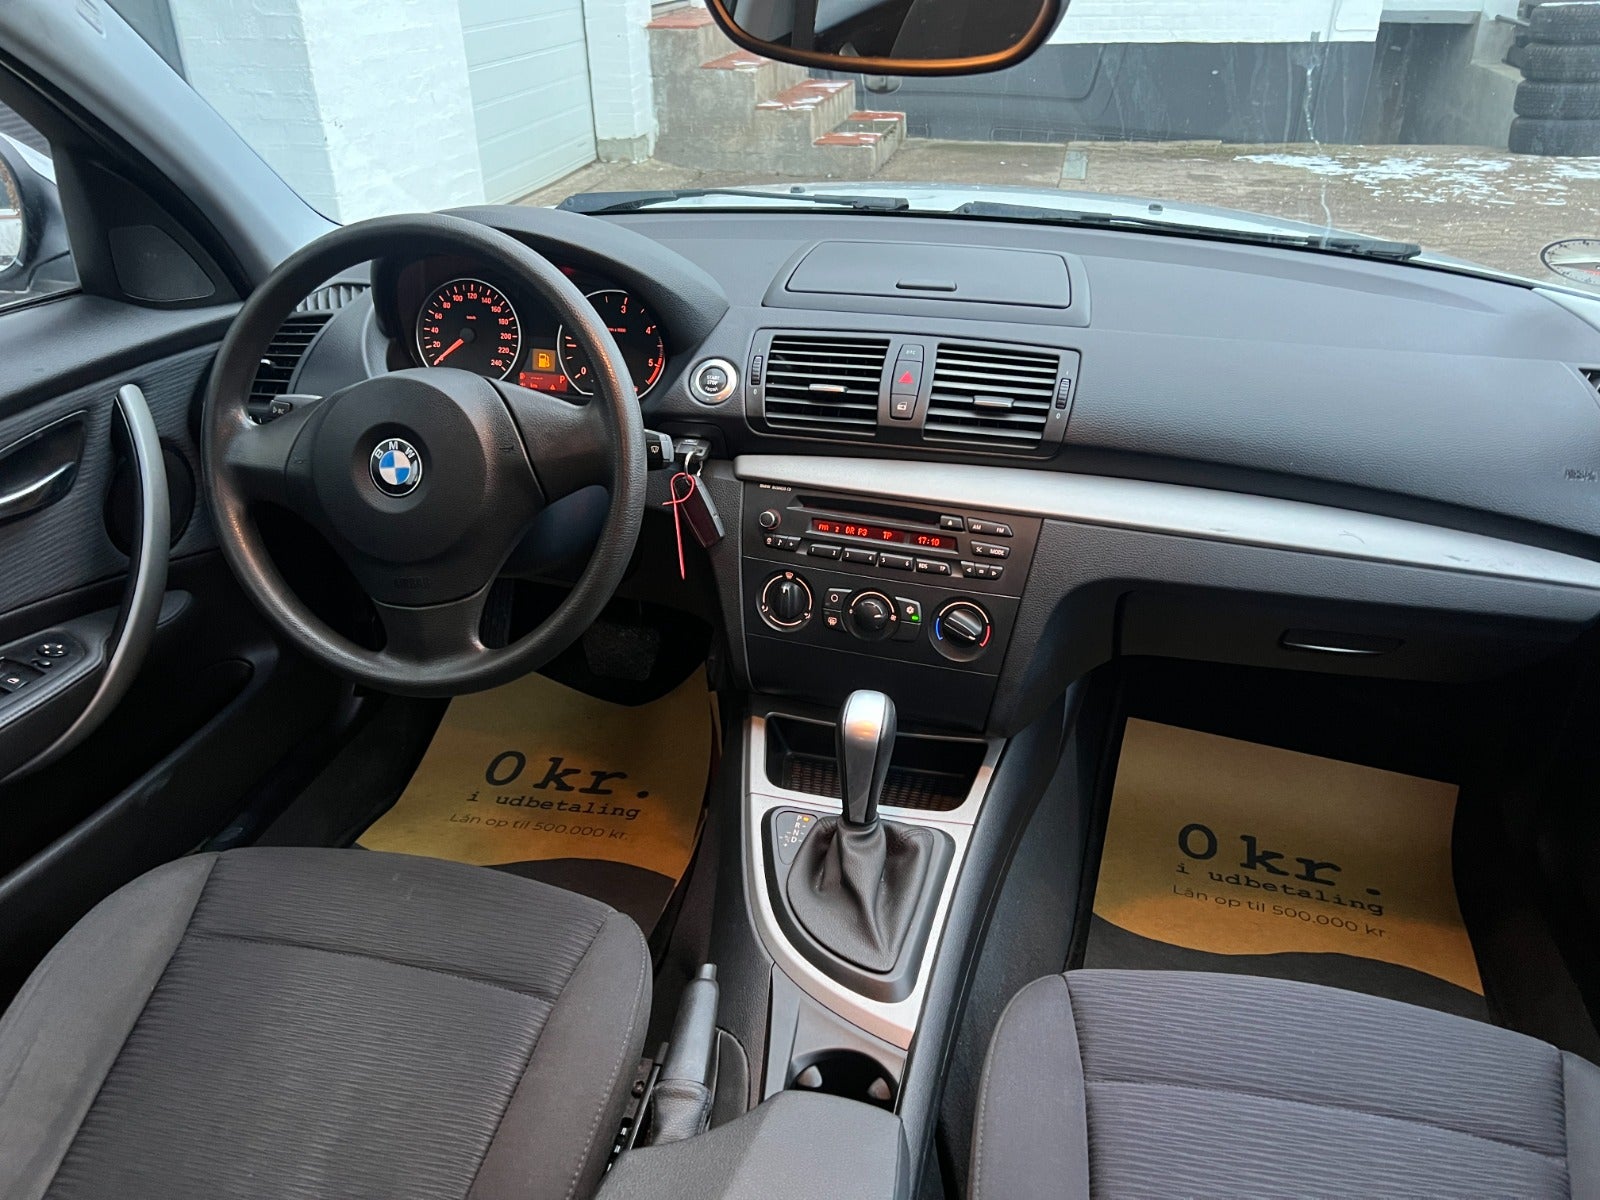 BMW 118d 2,0 aut. Diesel aut. Automatgear modelår 2009 km